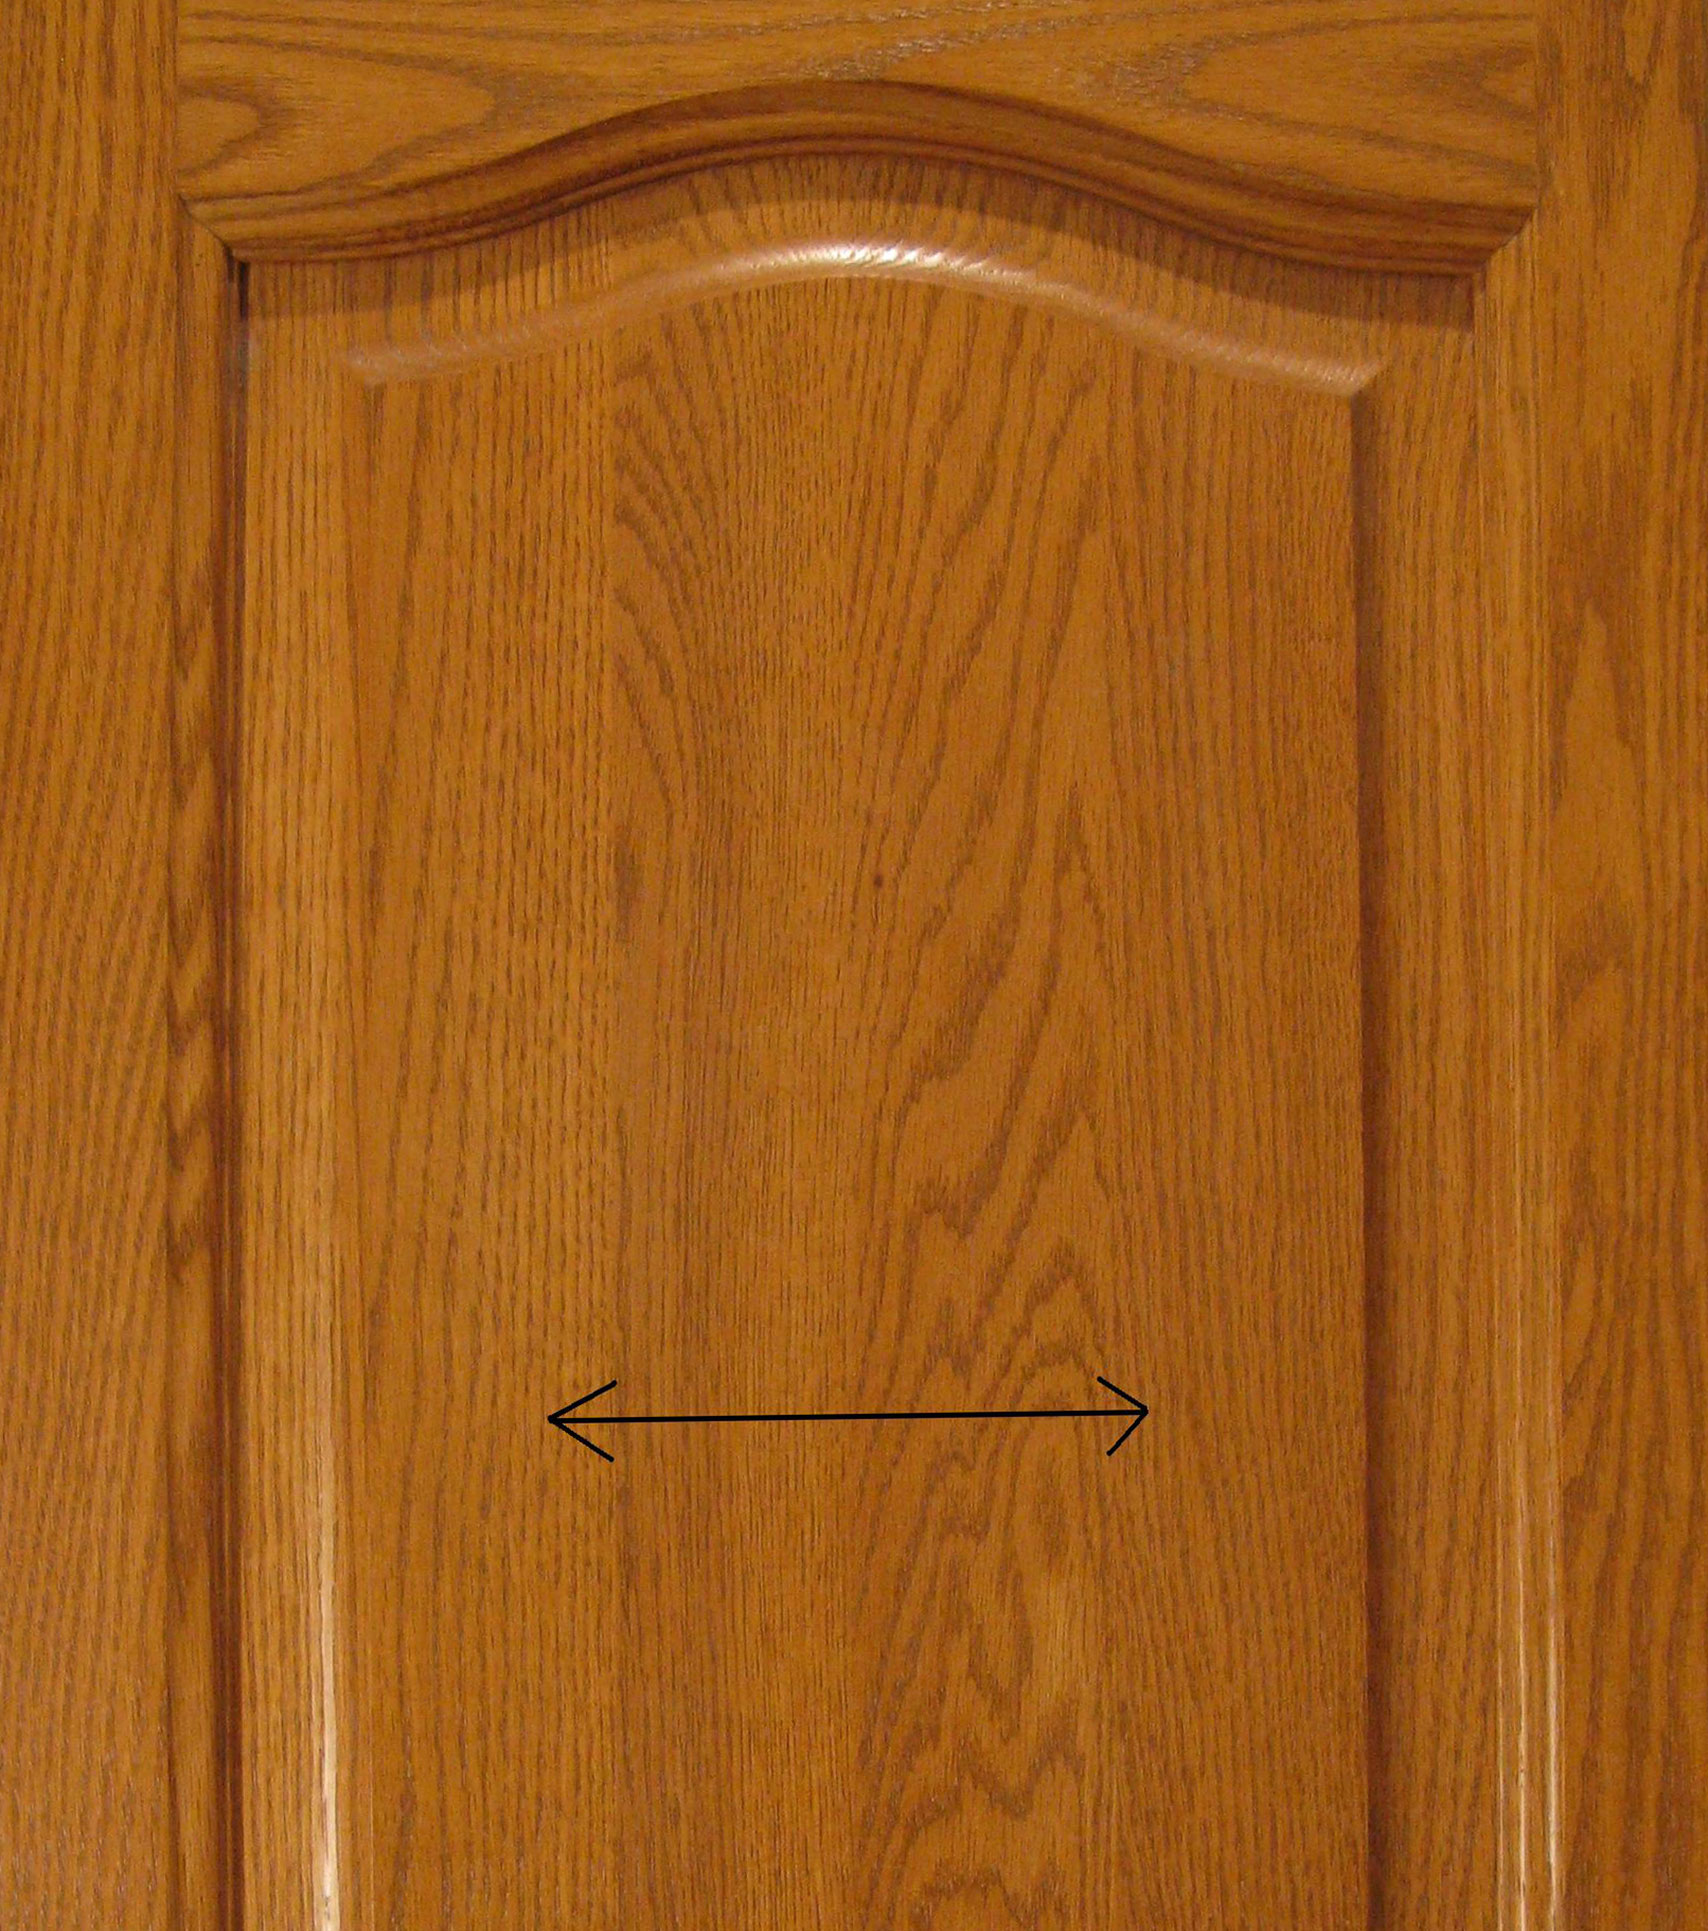 Porte d'armoire en bois massif avec des flèches indiquant le mouvement du bois